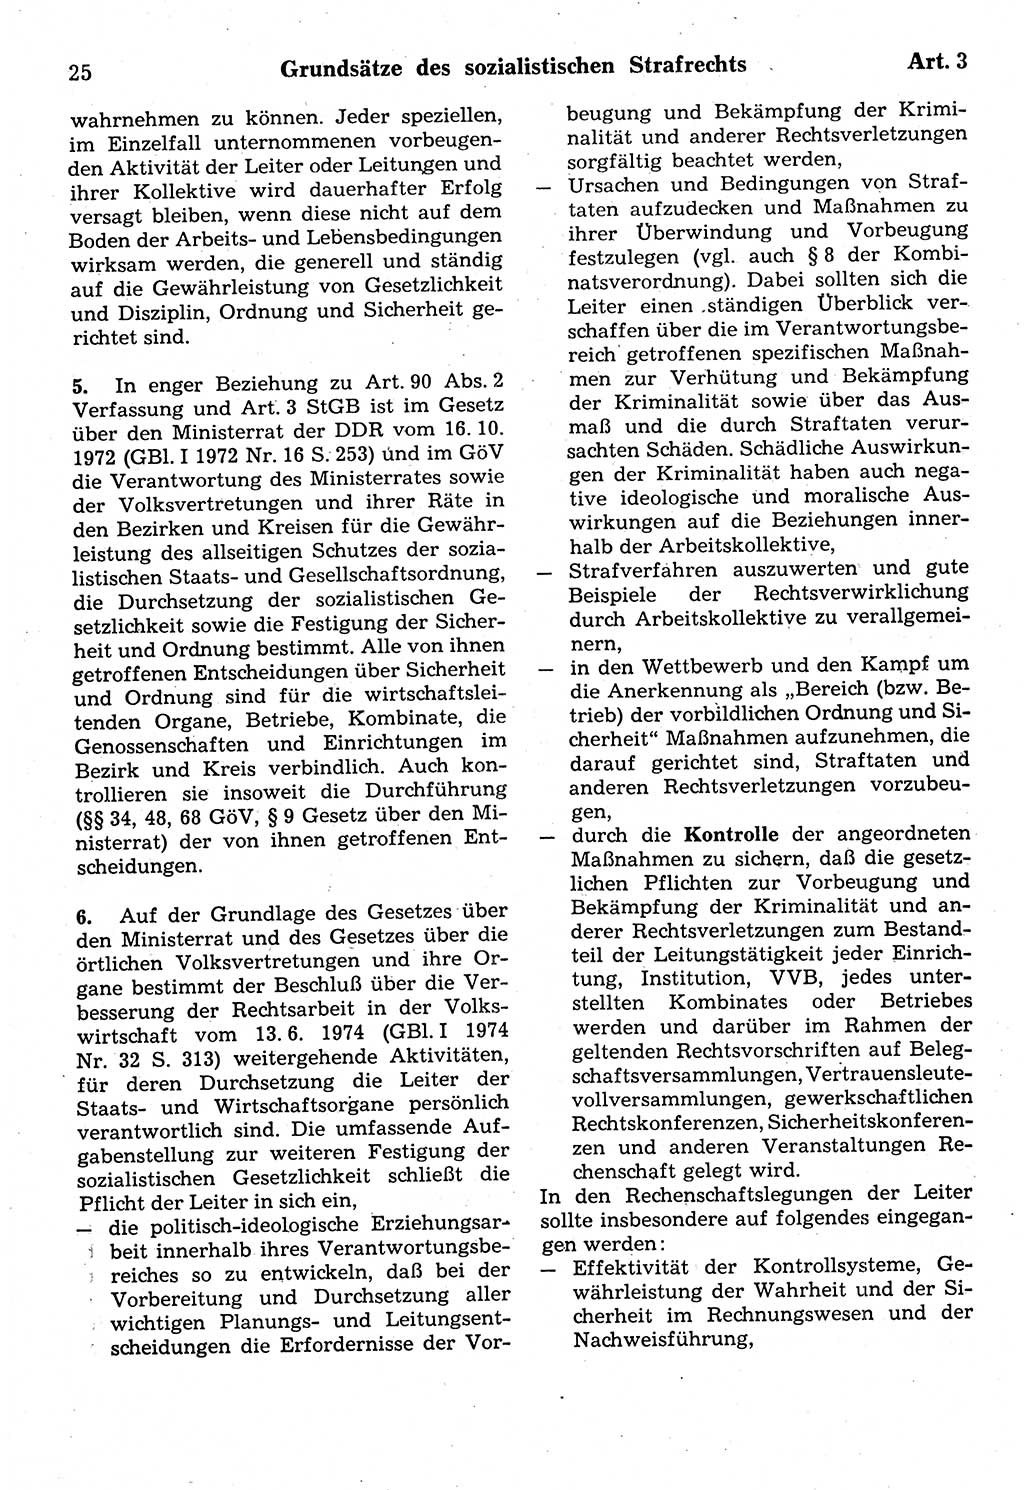 Strafrecht der Deutschen Demokratischen Republik (DDR), Kommentar zum Strafgesetzbuch (StGB) 1987, Seite 25 (Strafr. DDR Komm. StGB 1987, S. 25)